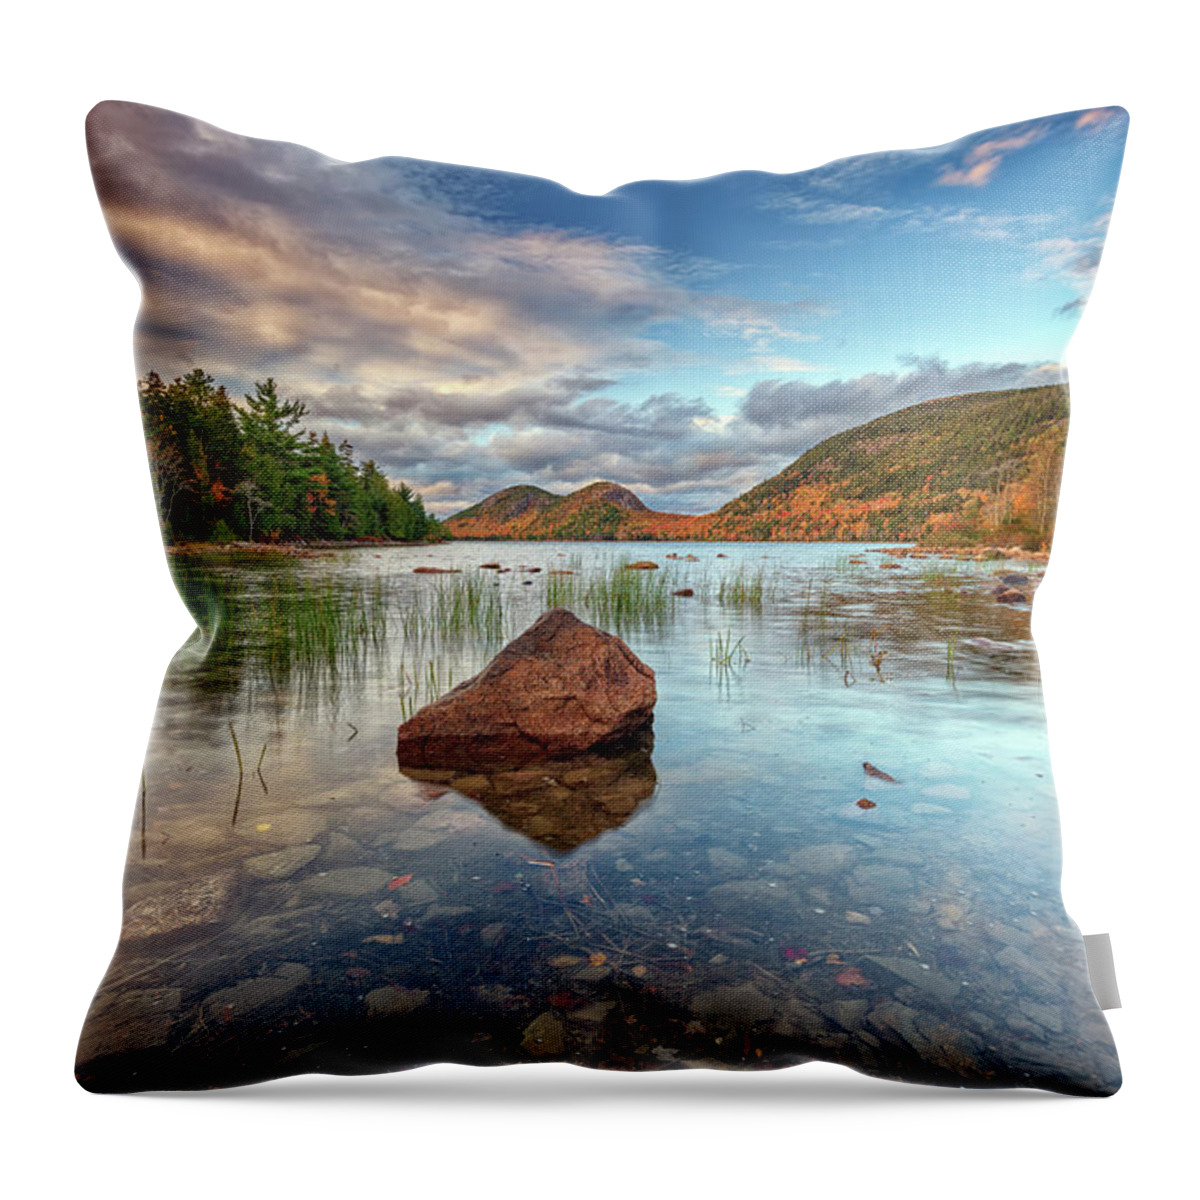 Jordan Throw Pillow featuring the photograph Autumn Dusk at Jordan Pond by Rick Berk